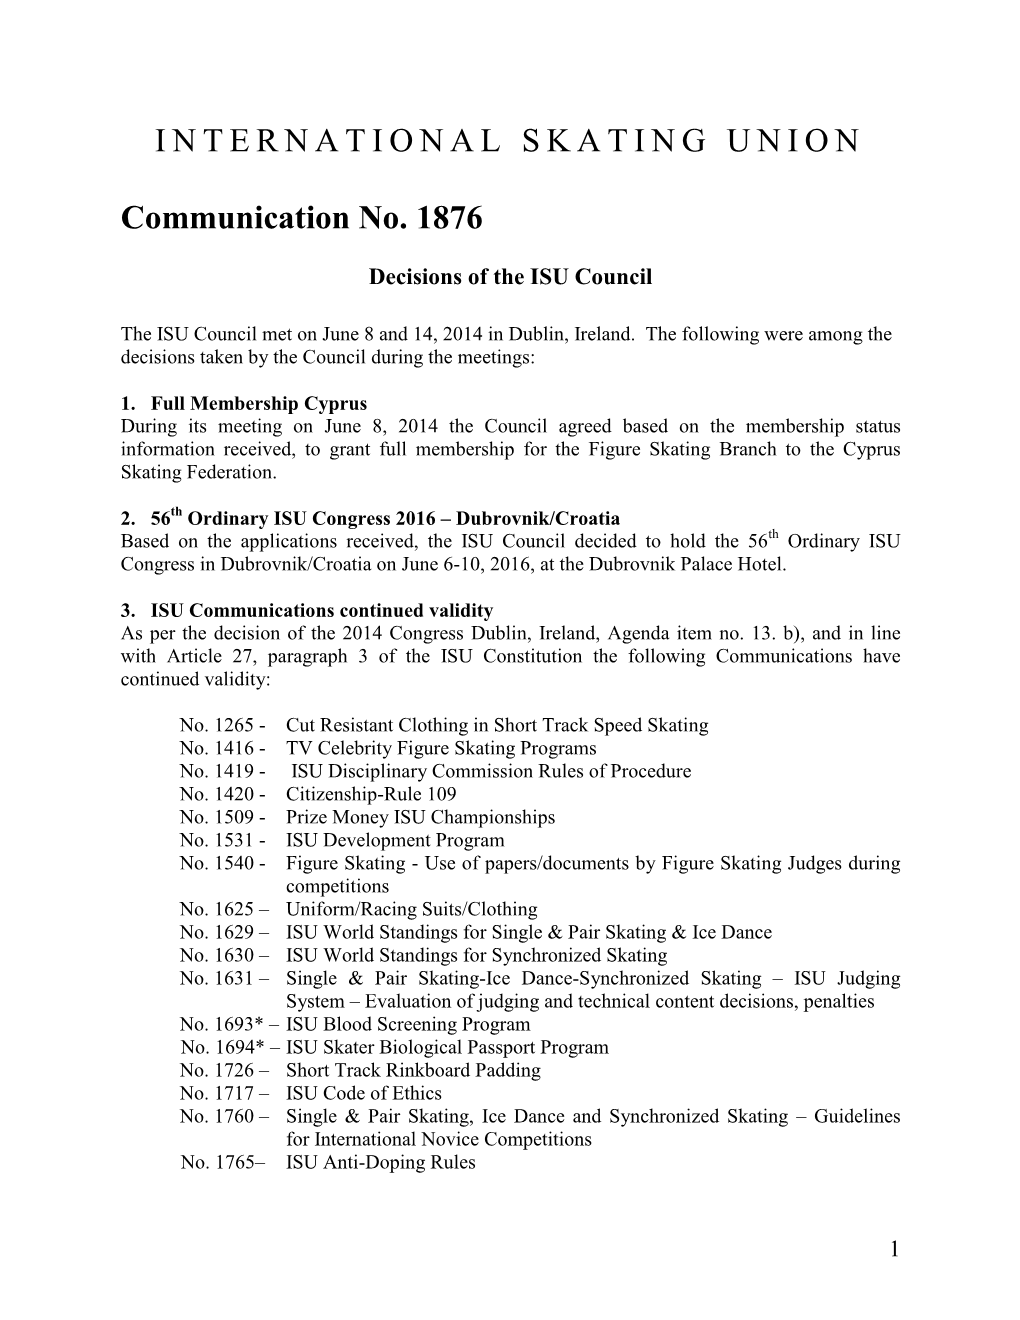 ISU Communication 1876